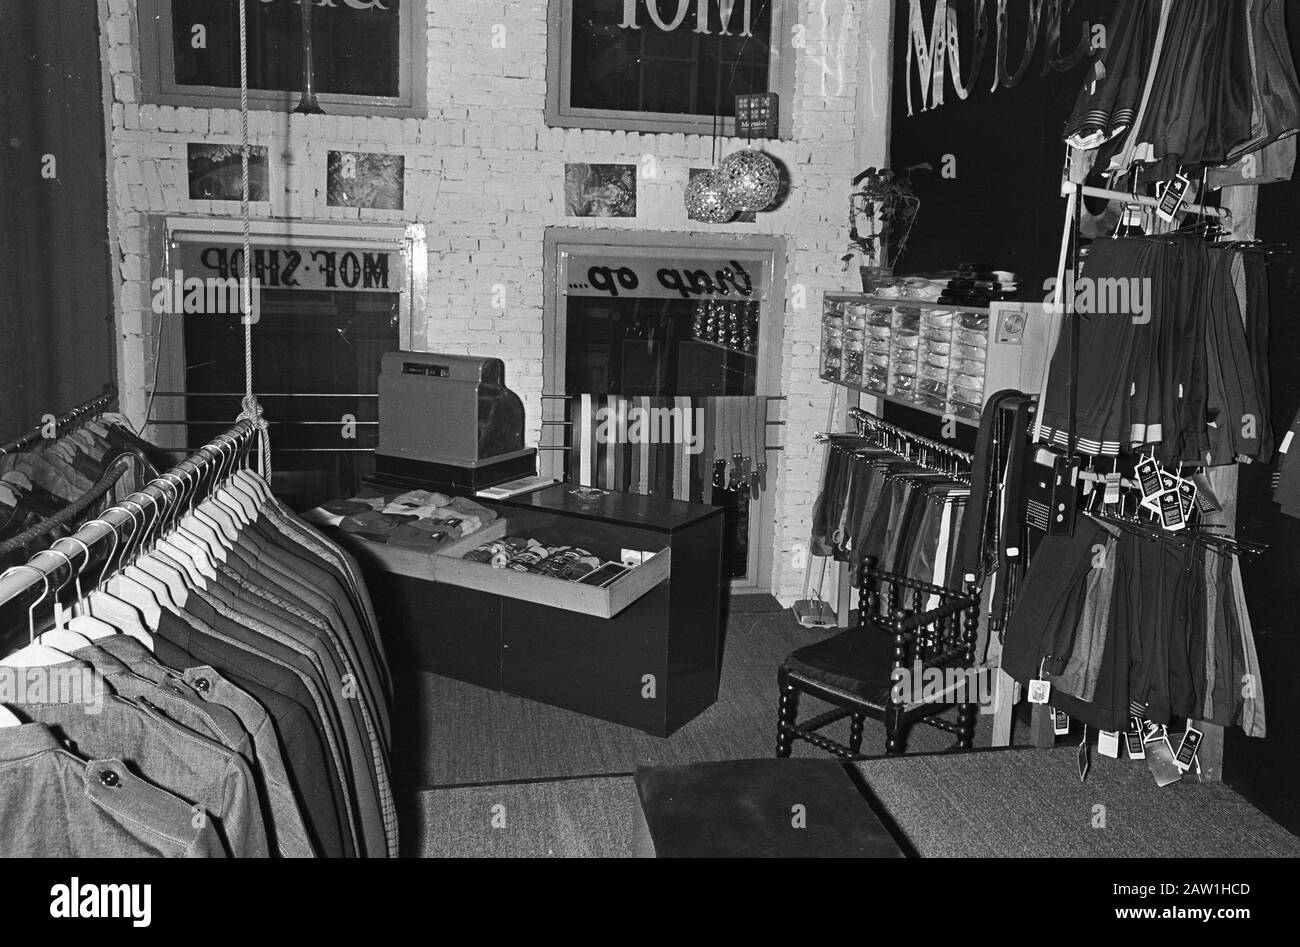 Textilia. Tienda Haarlemmerdijk anotación: Tienda de ropa 'Tienda' 'de Mof '1885 ropa de trabajo y overalls) a la Haarlemmerdijk, su tiempo a mí Fecha: 14 de noviembre de 1967